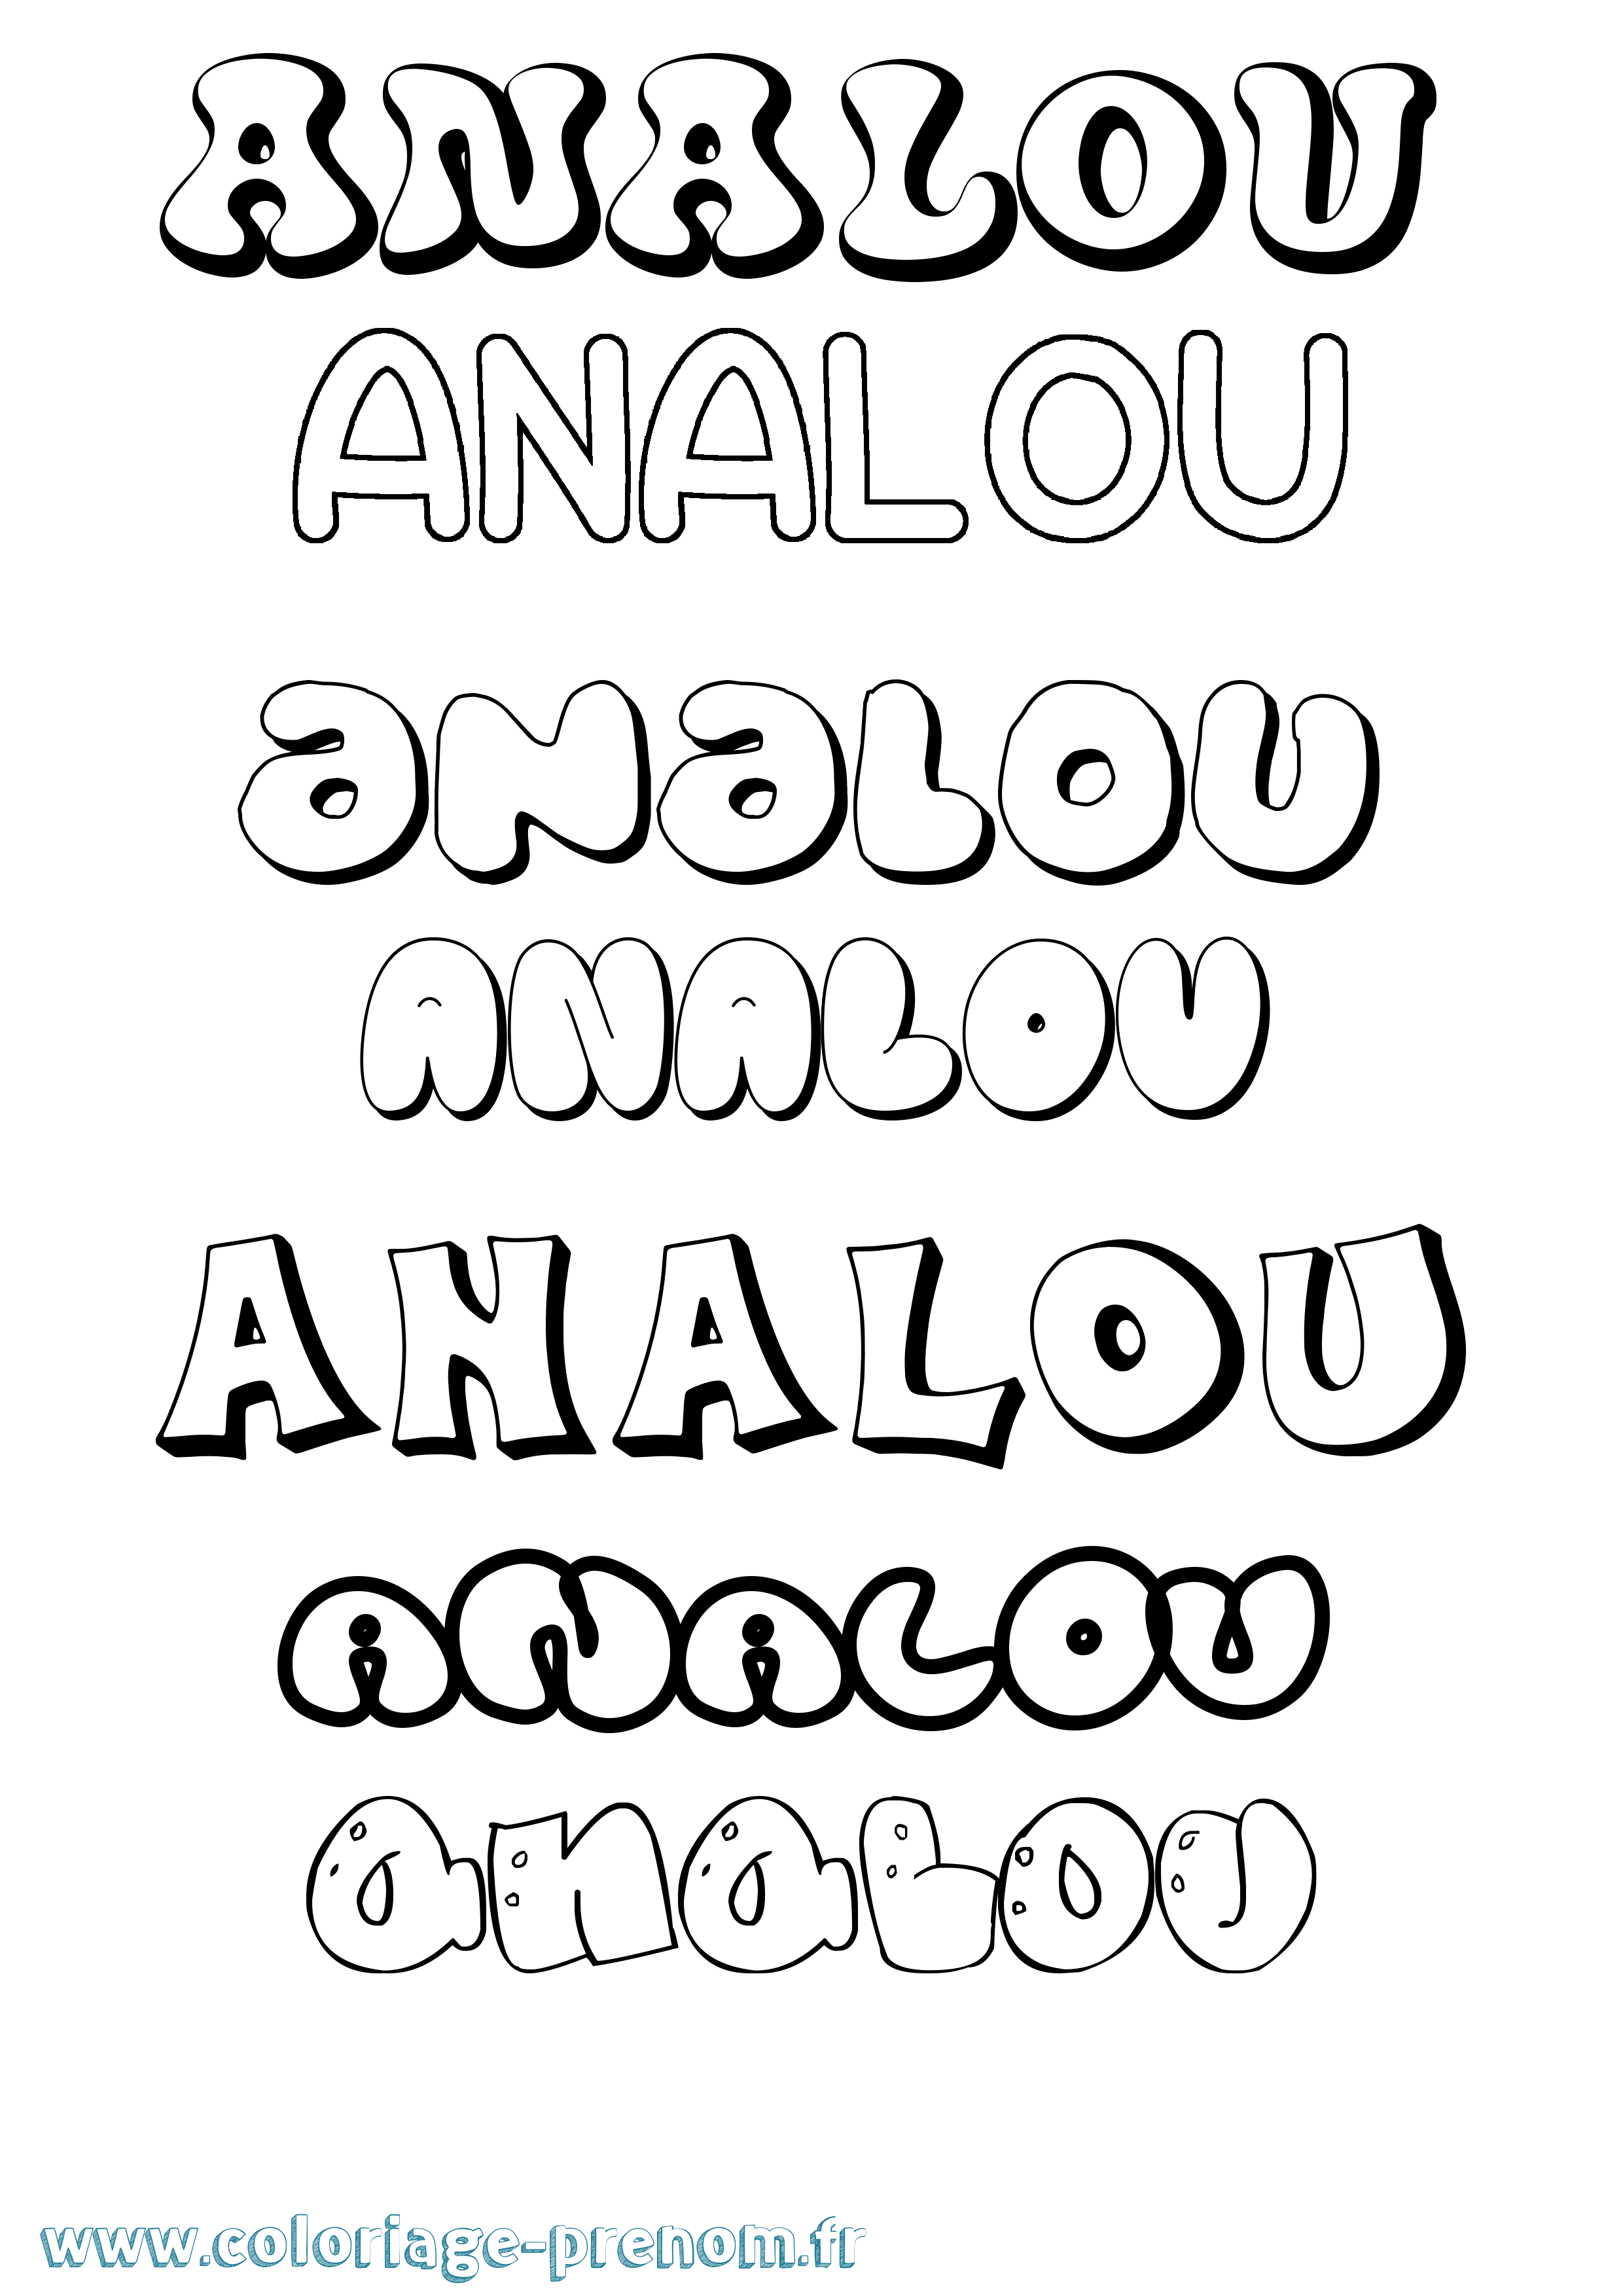 Coloriage prénom Analou Bubble